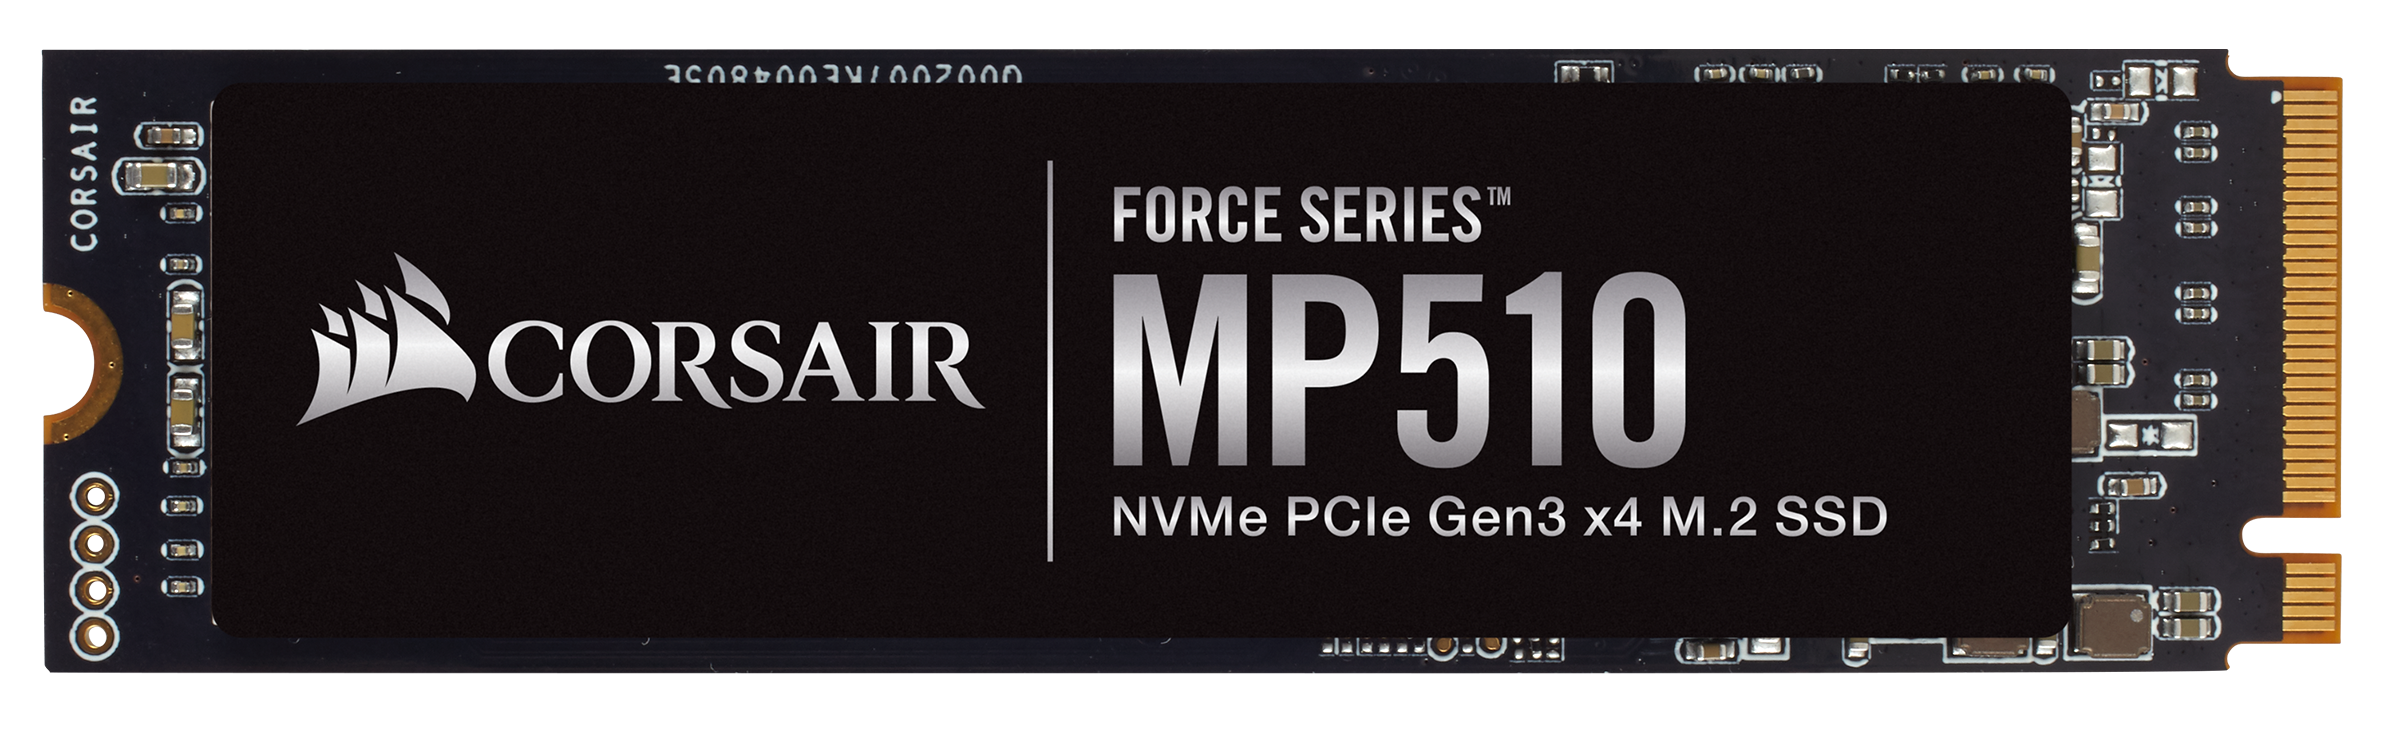 480 510. SSD M.2 Corsair mp510. Corsair Force Series mp510 240gb CSSD-f240gbmp510,. Corsair CSSD-f1920gbmp510. Corsair Force mp510 Series NVME PCIE M.2 SSD 960gb,.